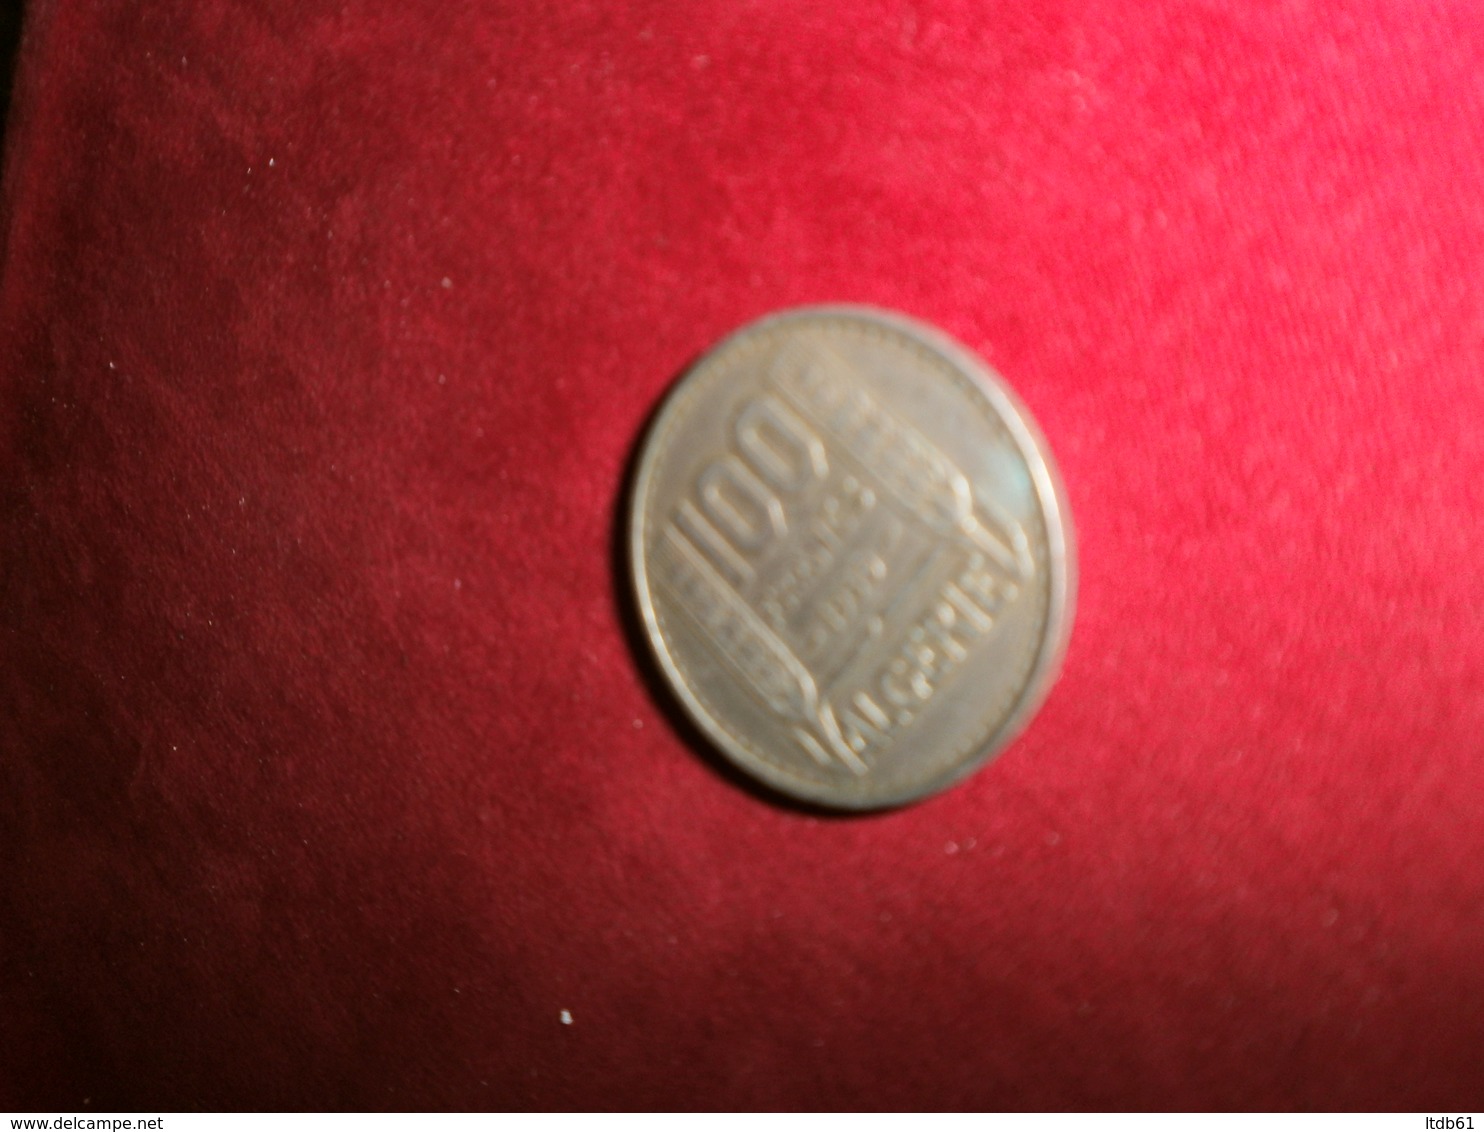 Monnaies & Billets > Monnaies > France > 1901-2001 > N. 100 Francs 1950 Algerie - Algerien